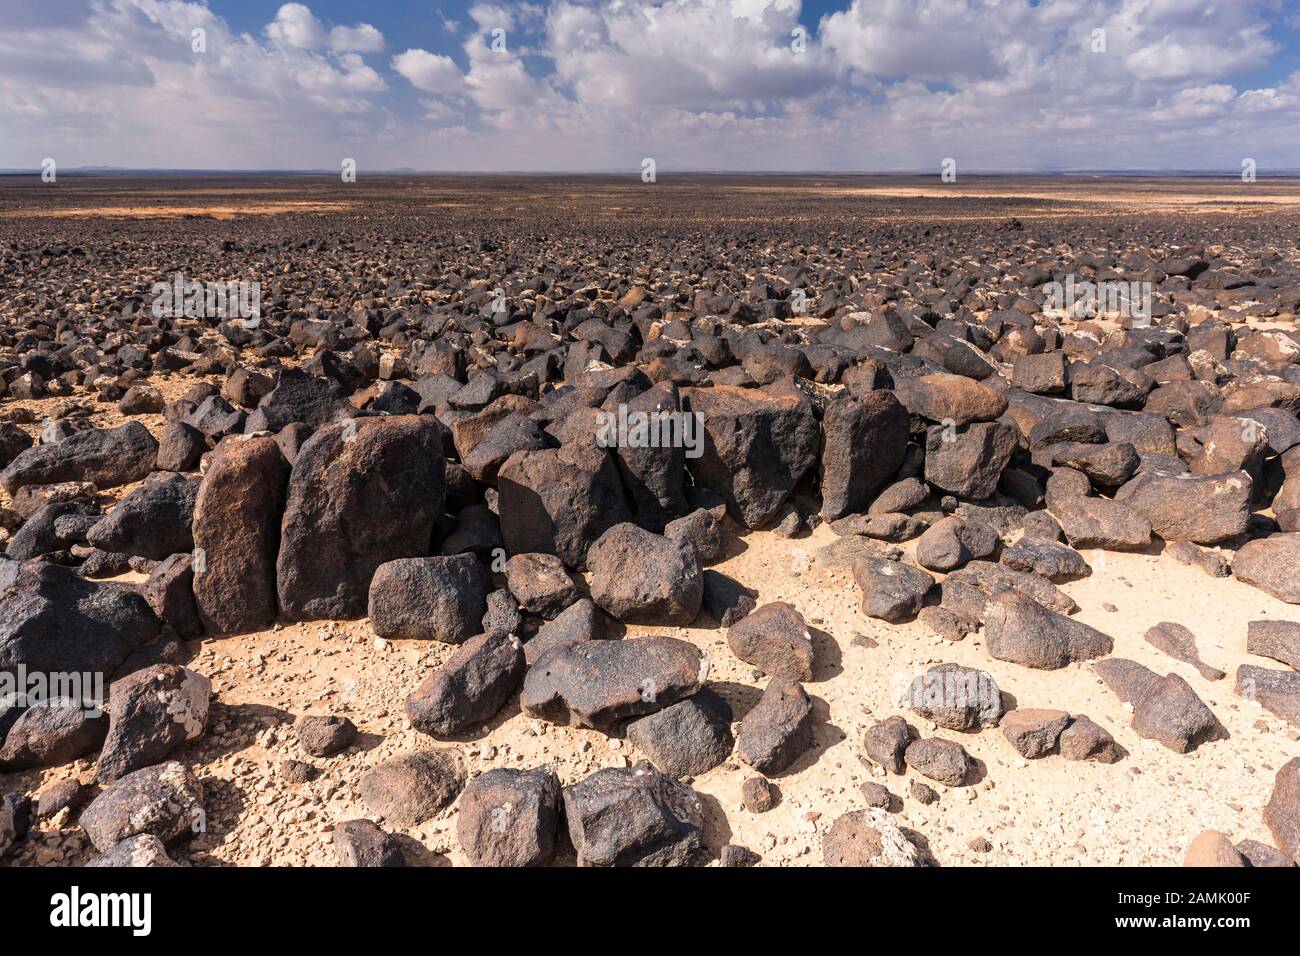 Desert Kite kite site ist antike Ruinen, als Falle für Jagd, durch Steinbildung, in der Nähe von Azraq, östliche Wüste, Jordanien, Naher Osten, Asien Stockfoto